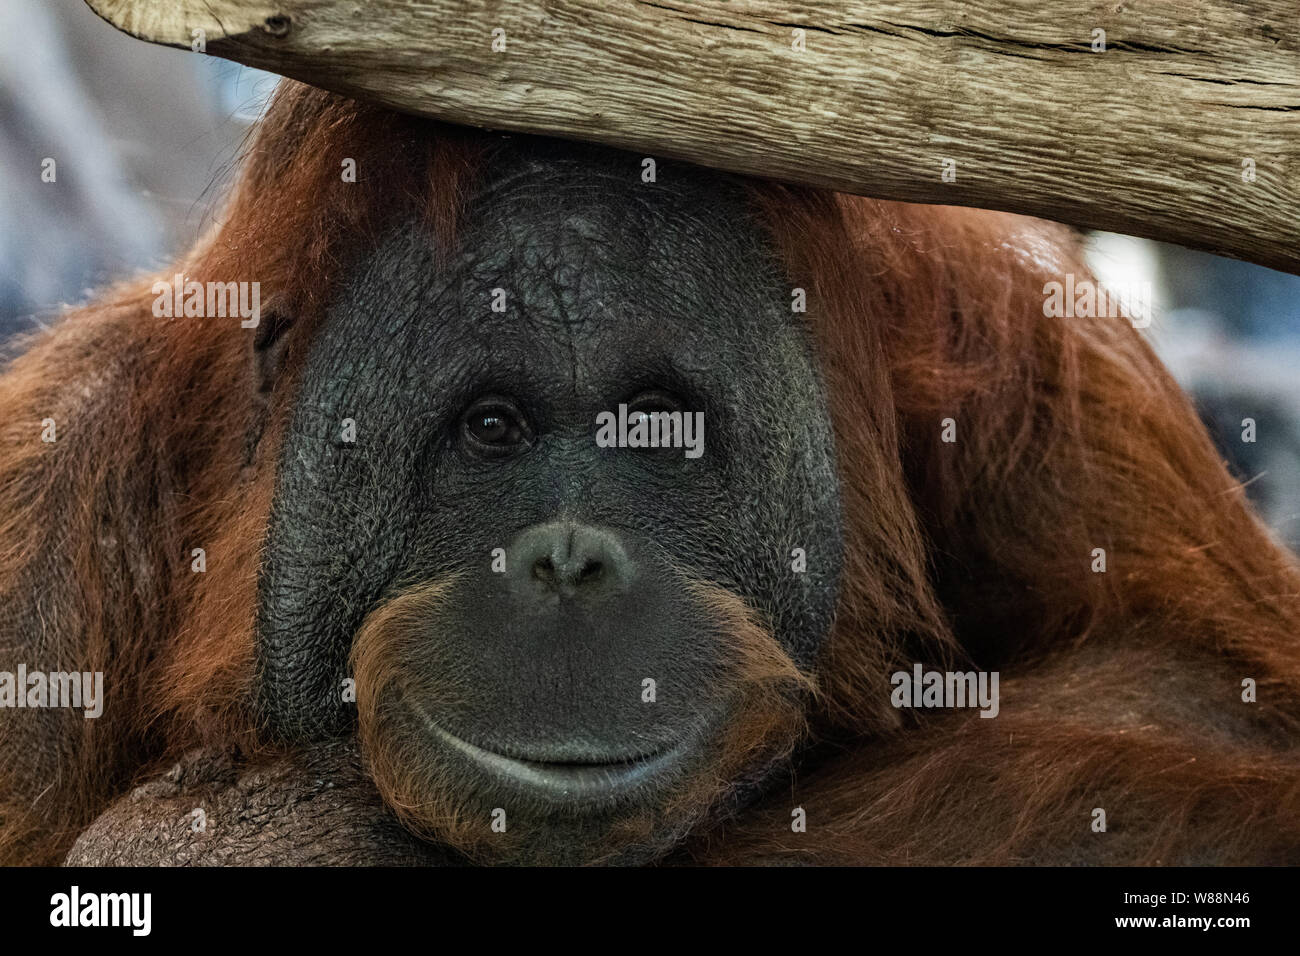 Cute old male orangutan ape portrait Stock Photo